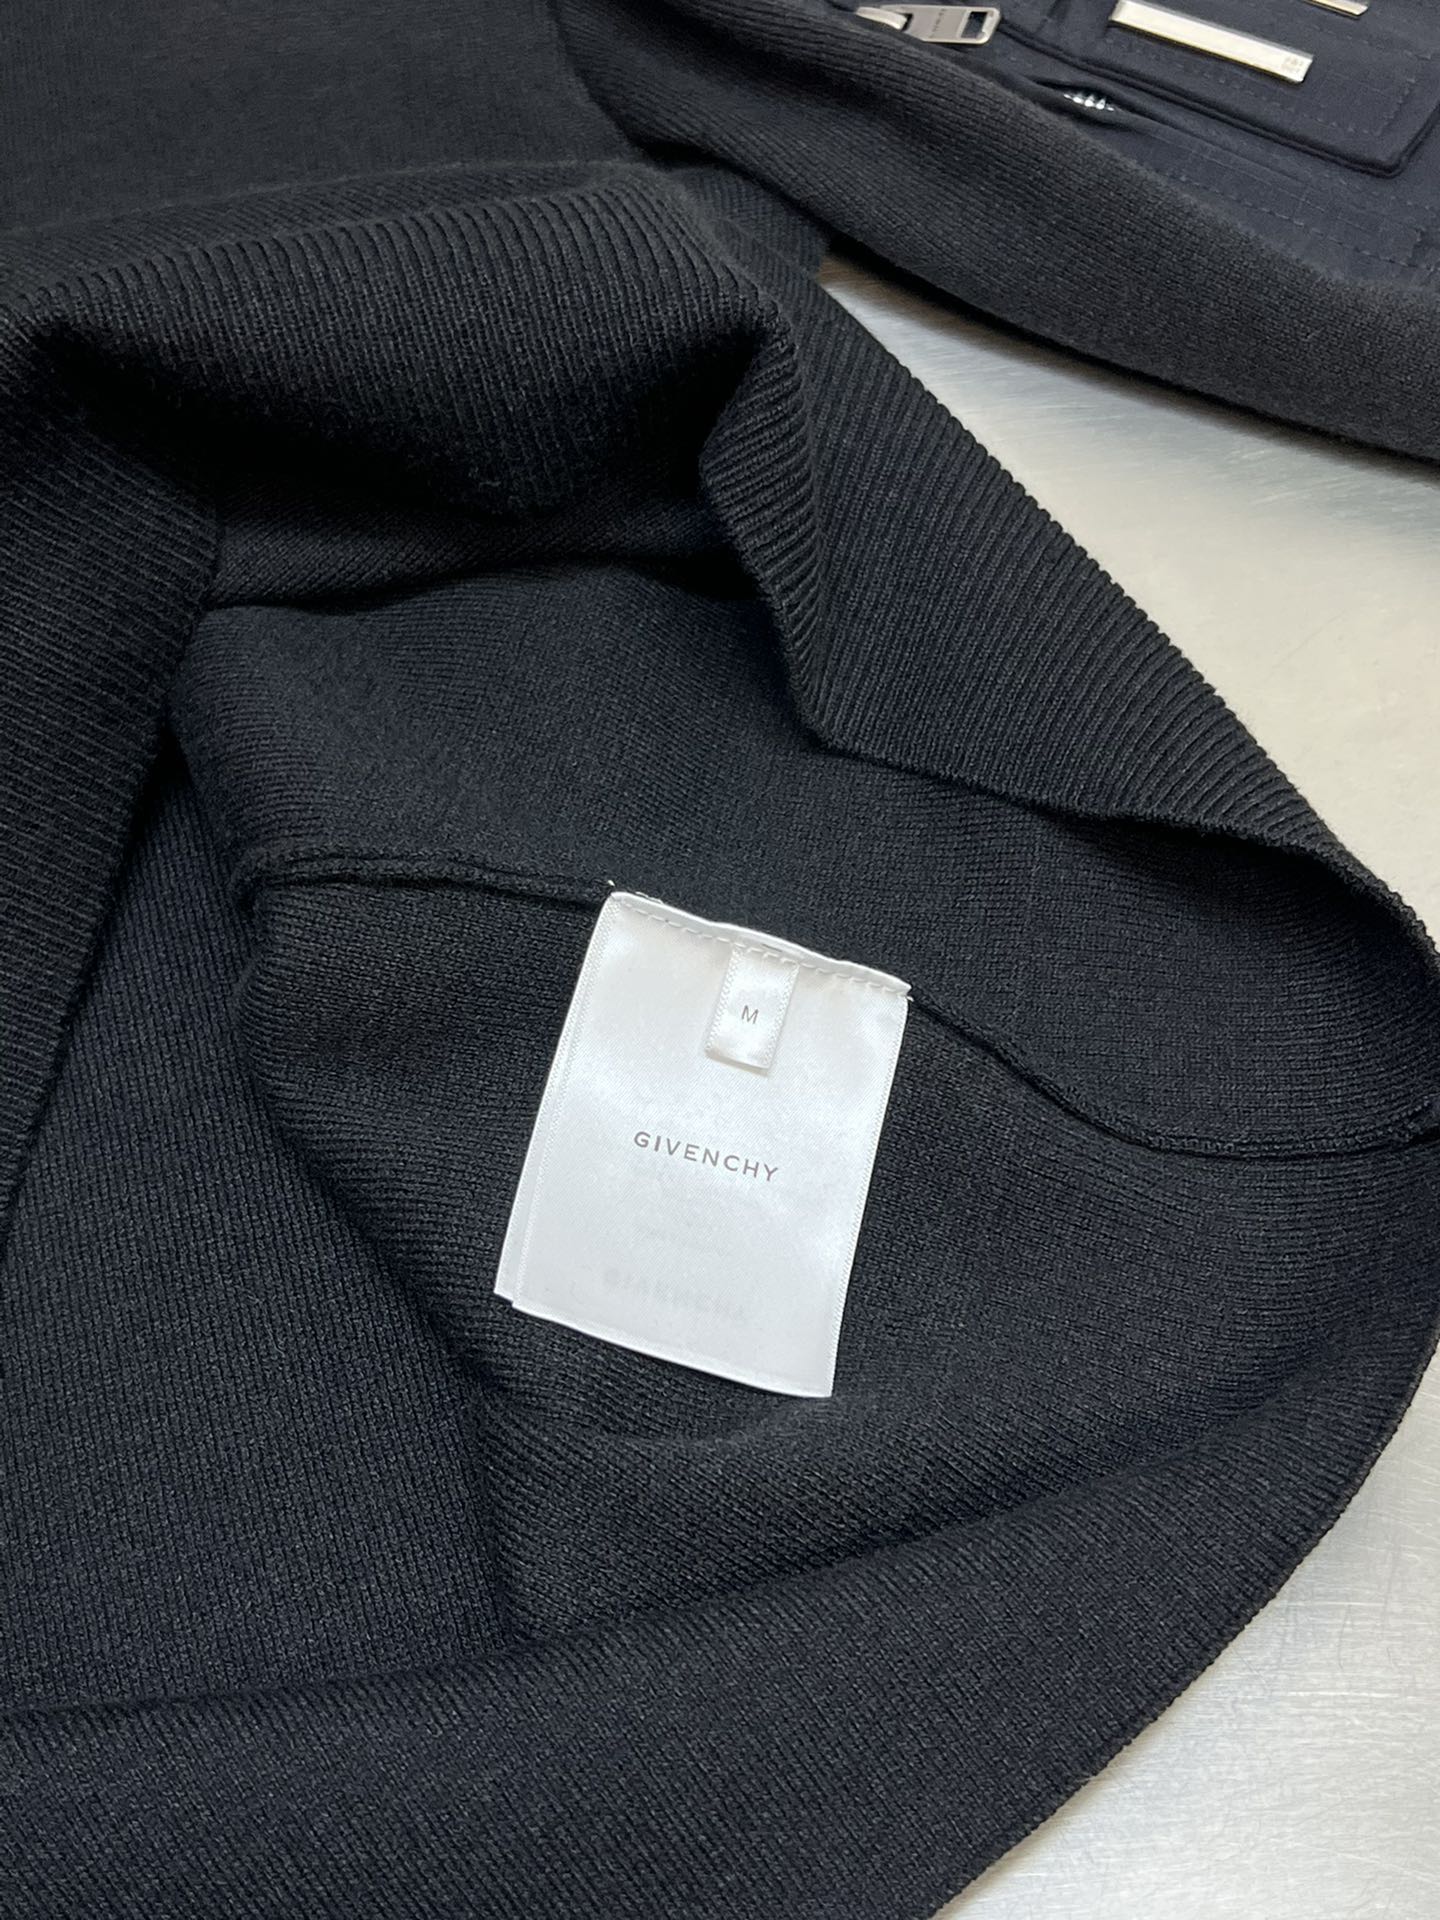 [新季度]ジバンシィ服偽物 冬服 暖かい ウール 厚い ニットトップス セーター シンプル ファッション ブラック_9